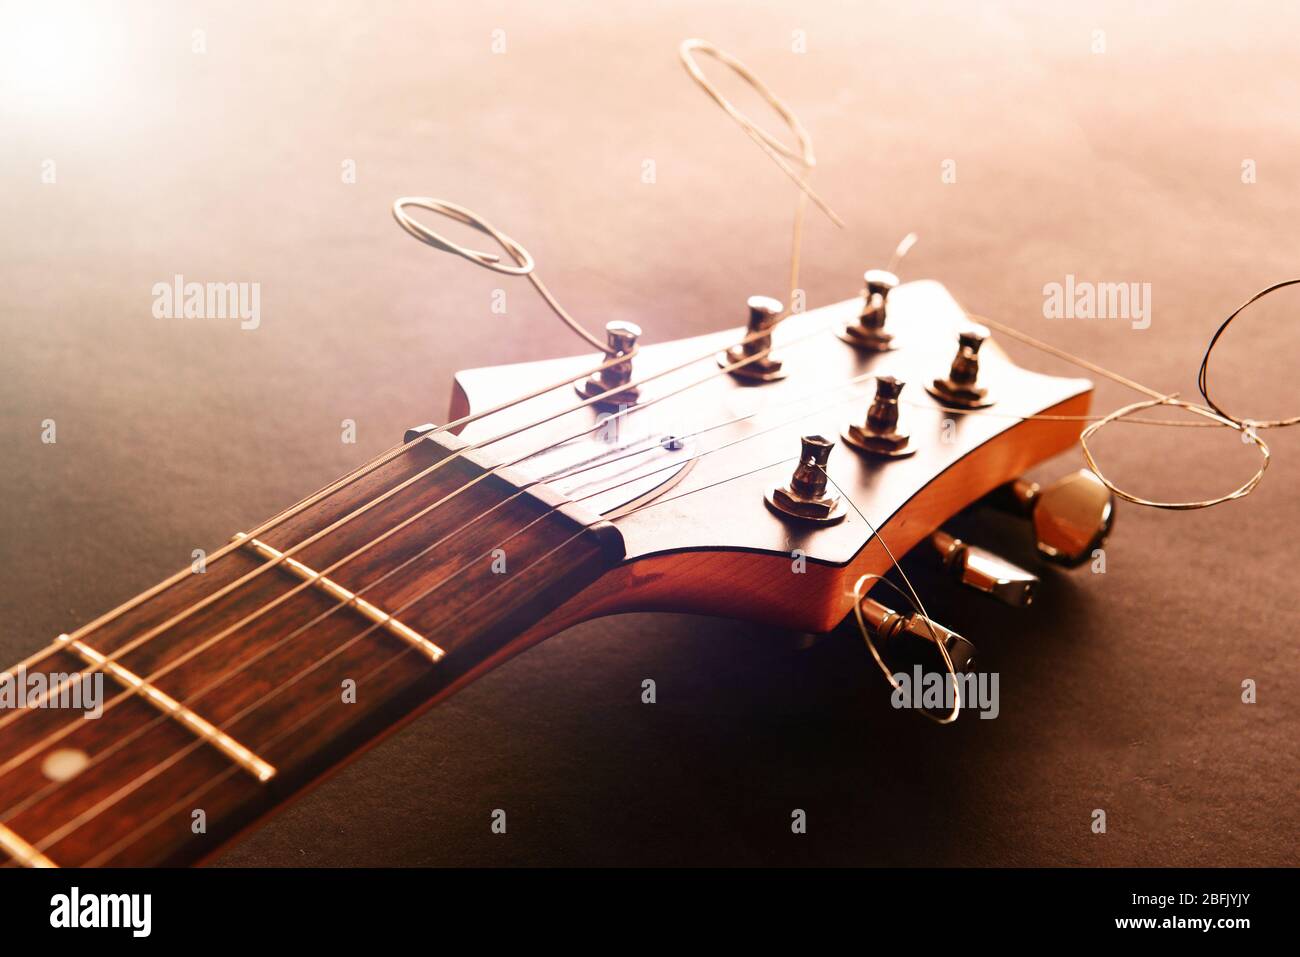 Electric guitar, close up Stock Photo